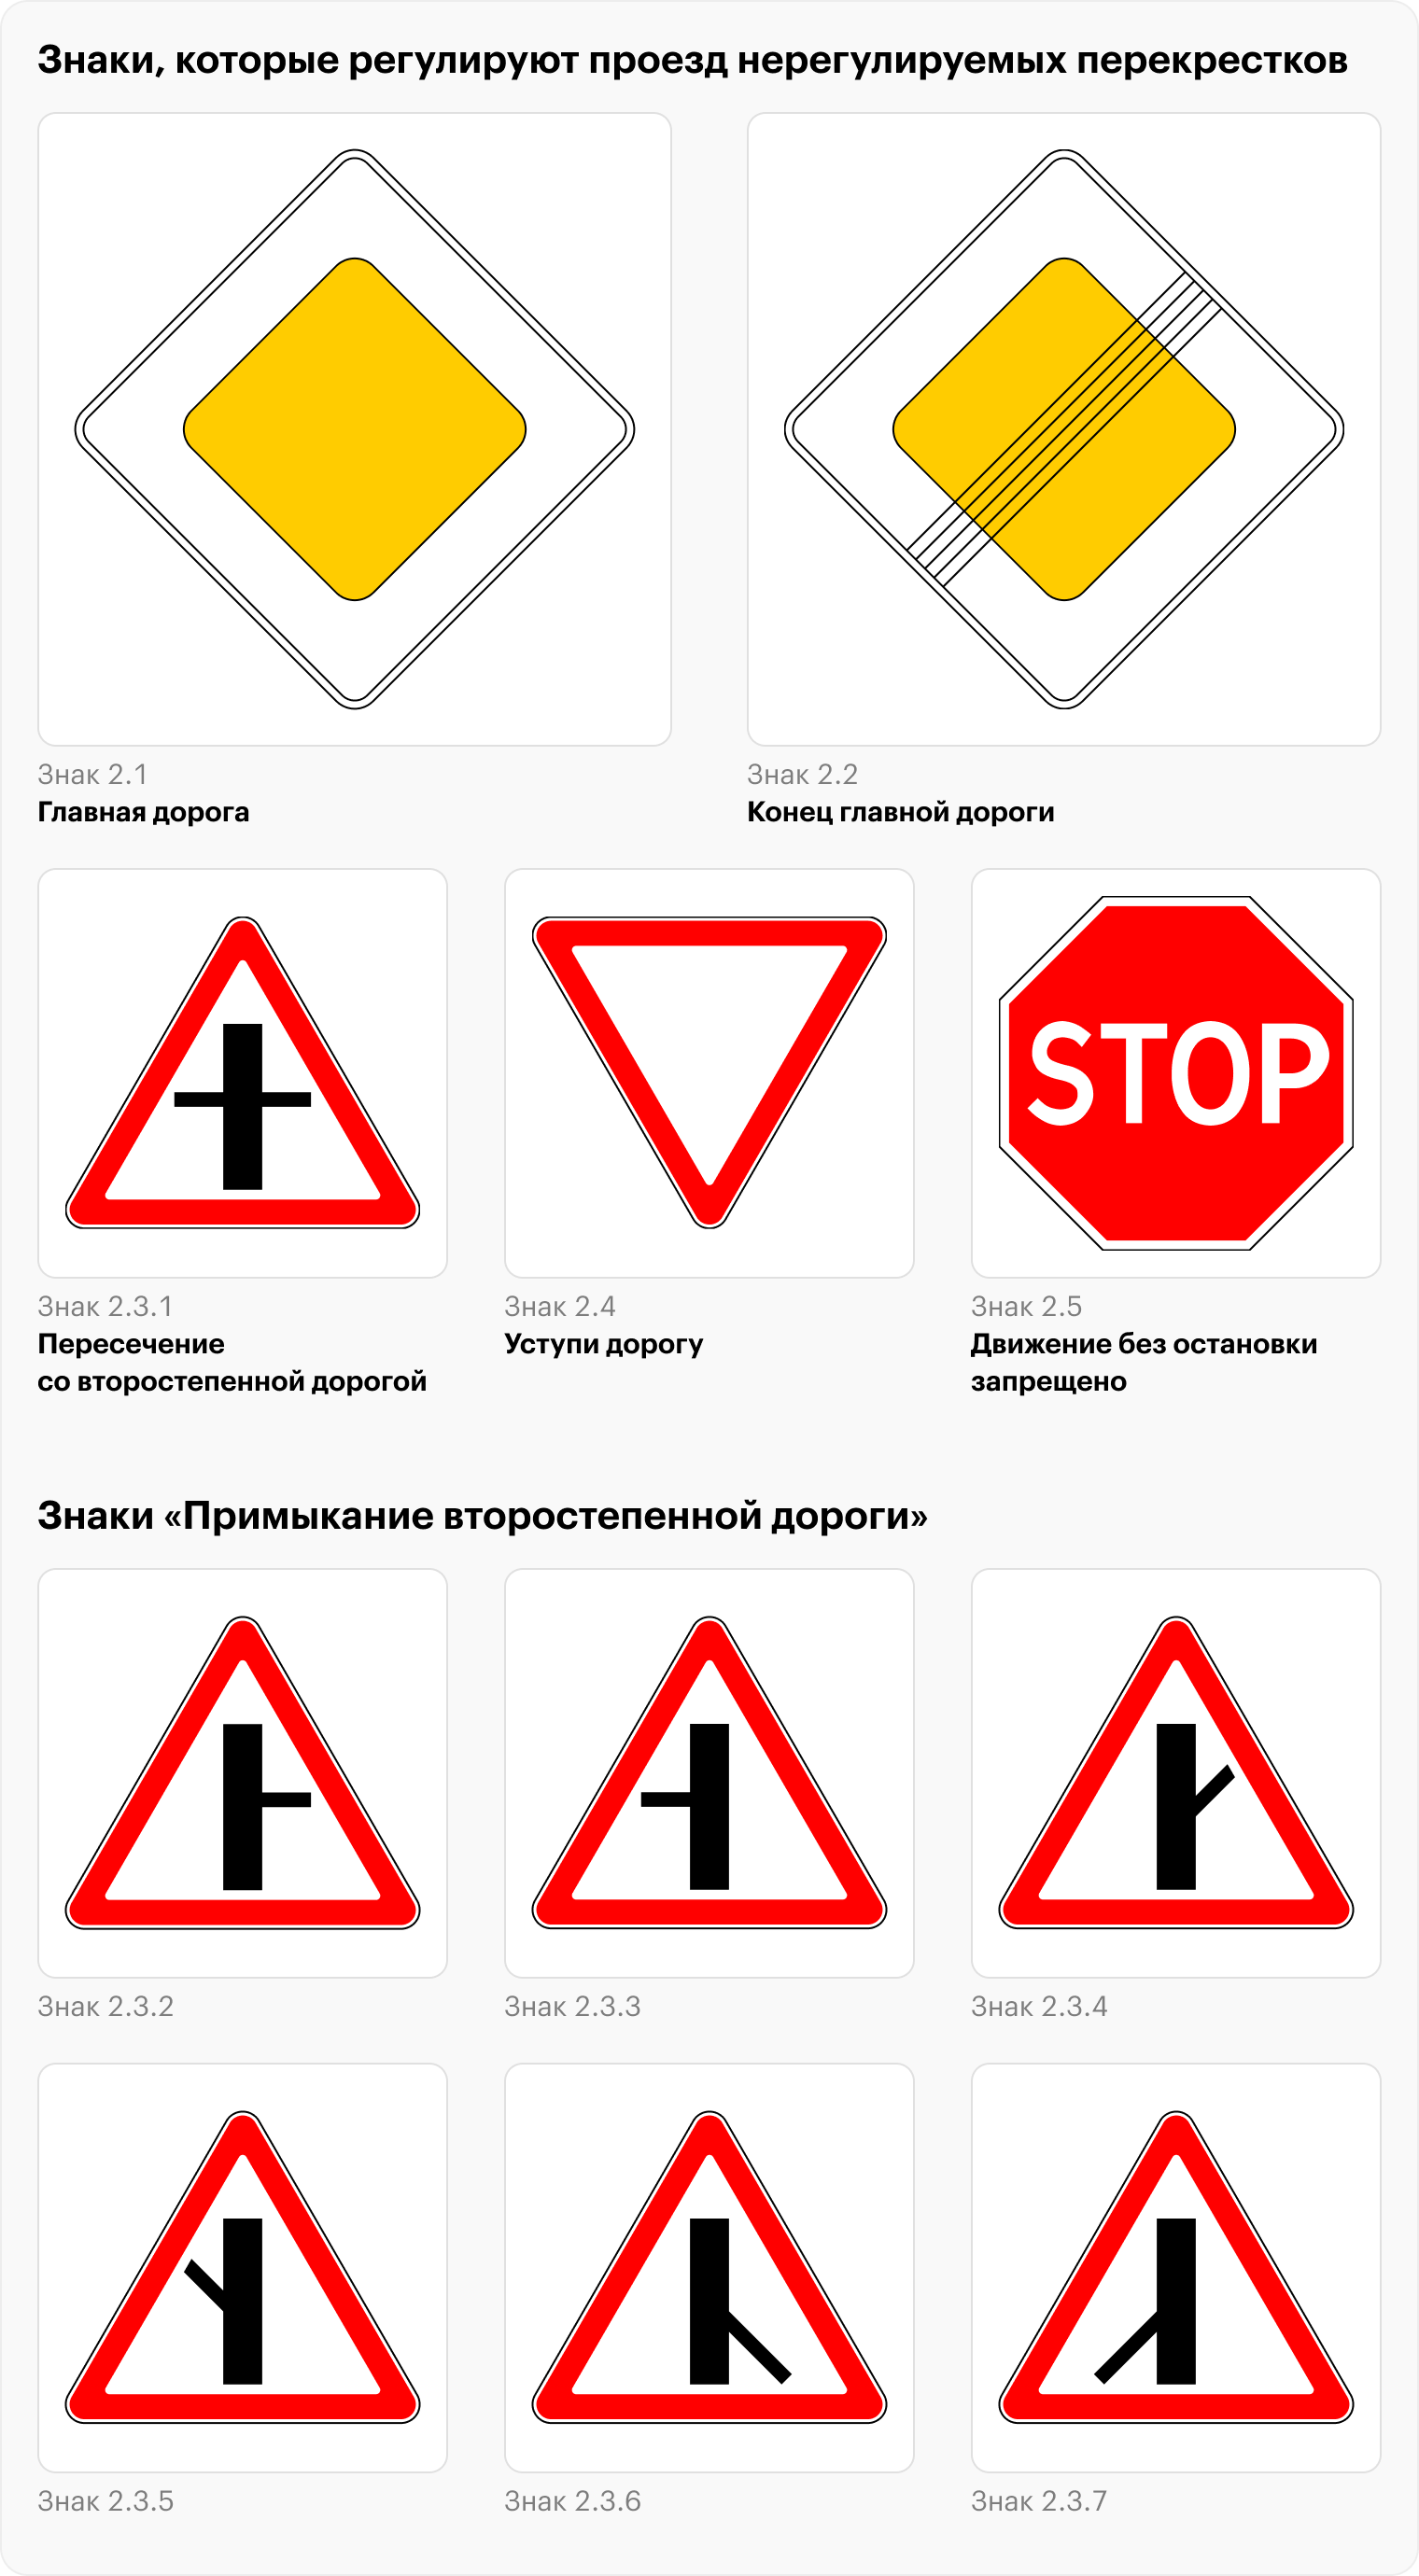 Все знаки на картинке, кроме 2.4, означают, что водитель на главной. А знаки 2.4 и 2.5 обязывают уступить дорогу